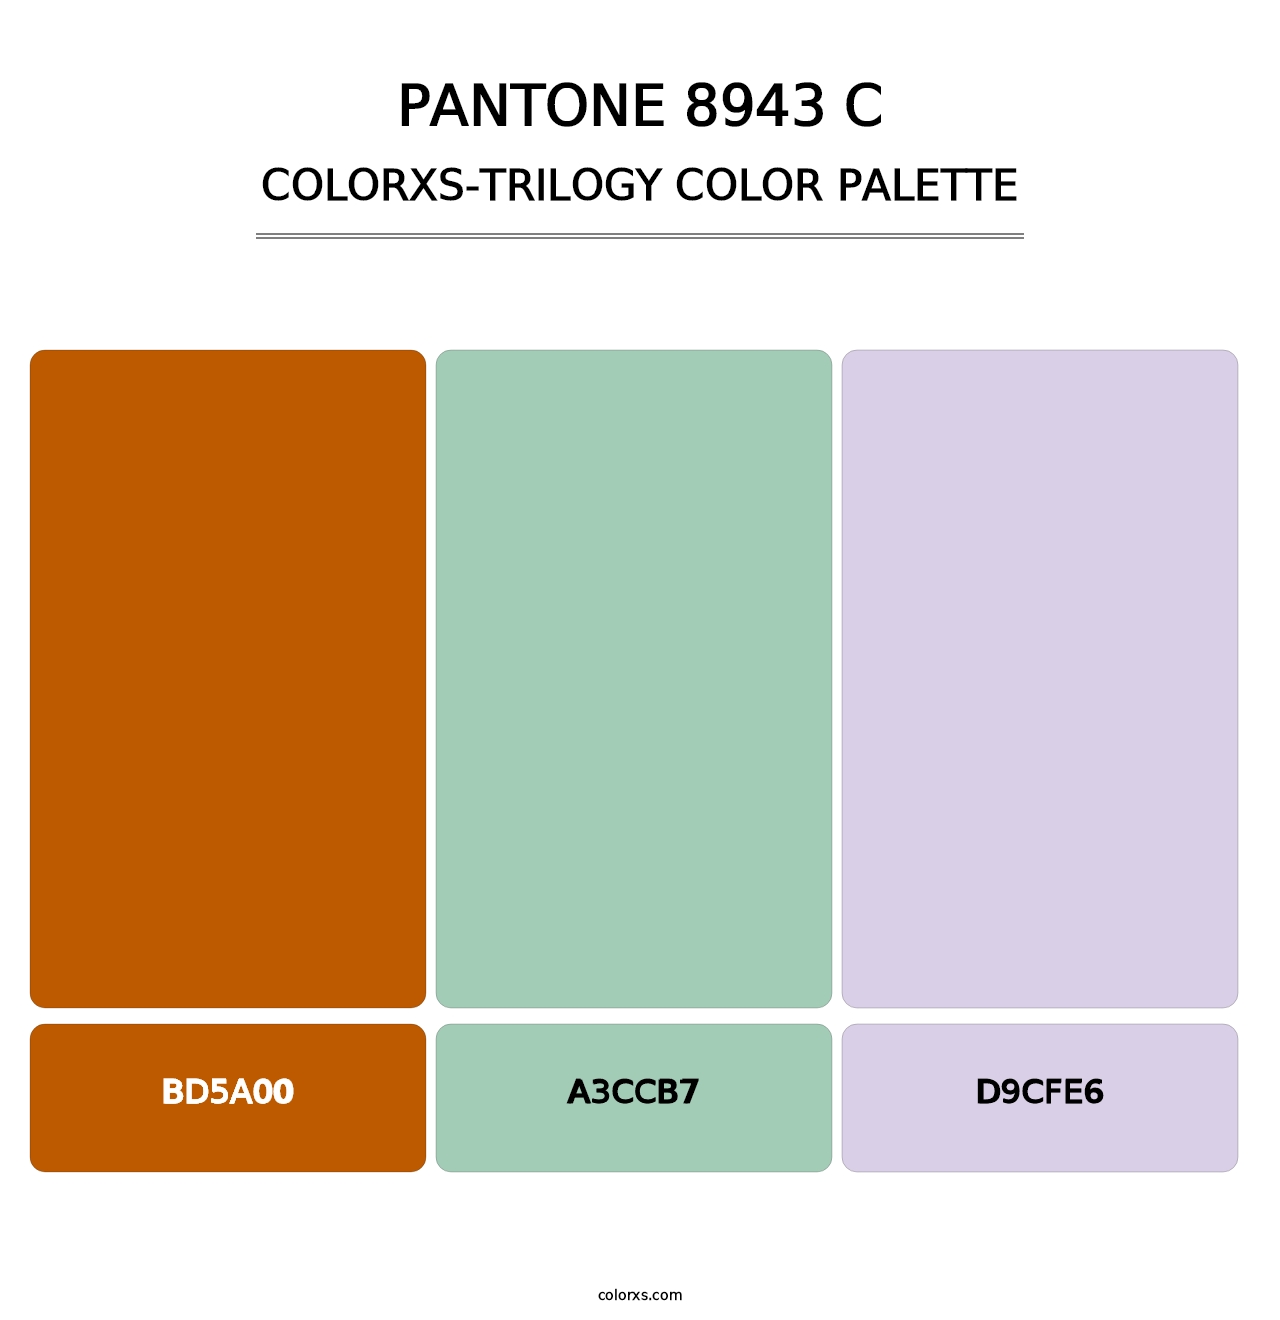 PANTONE 8943 C - Colorxs Trilogy Palette